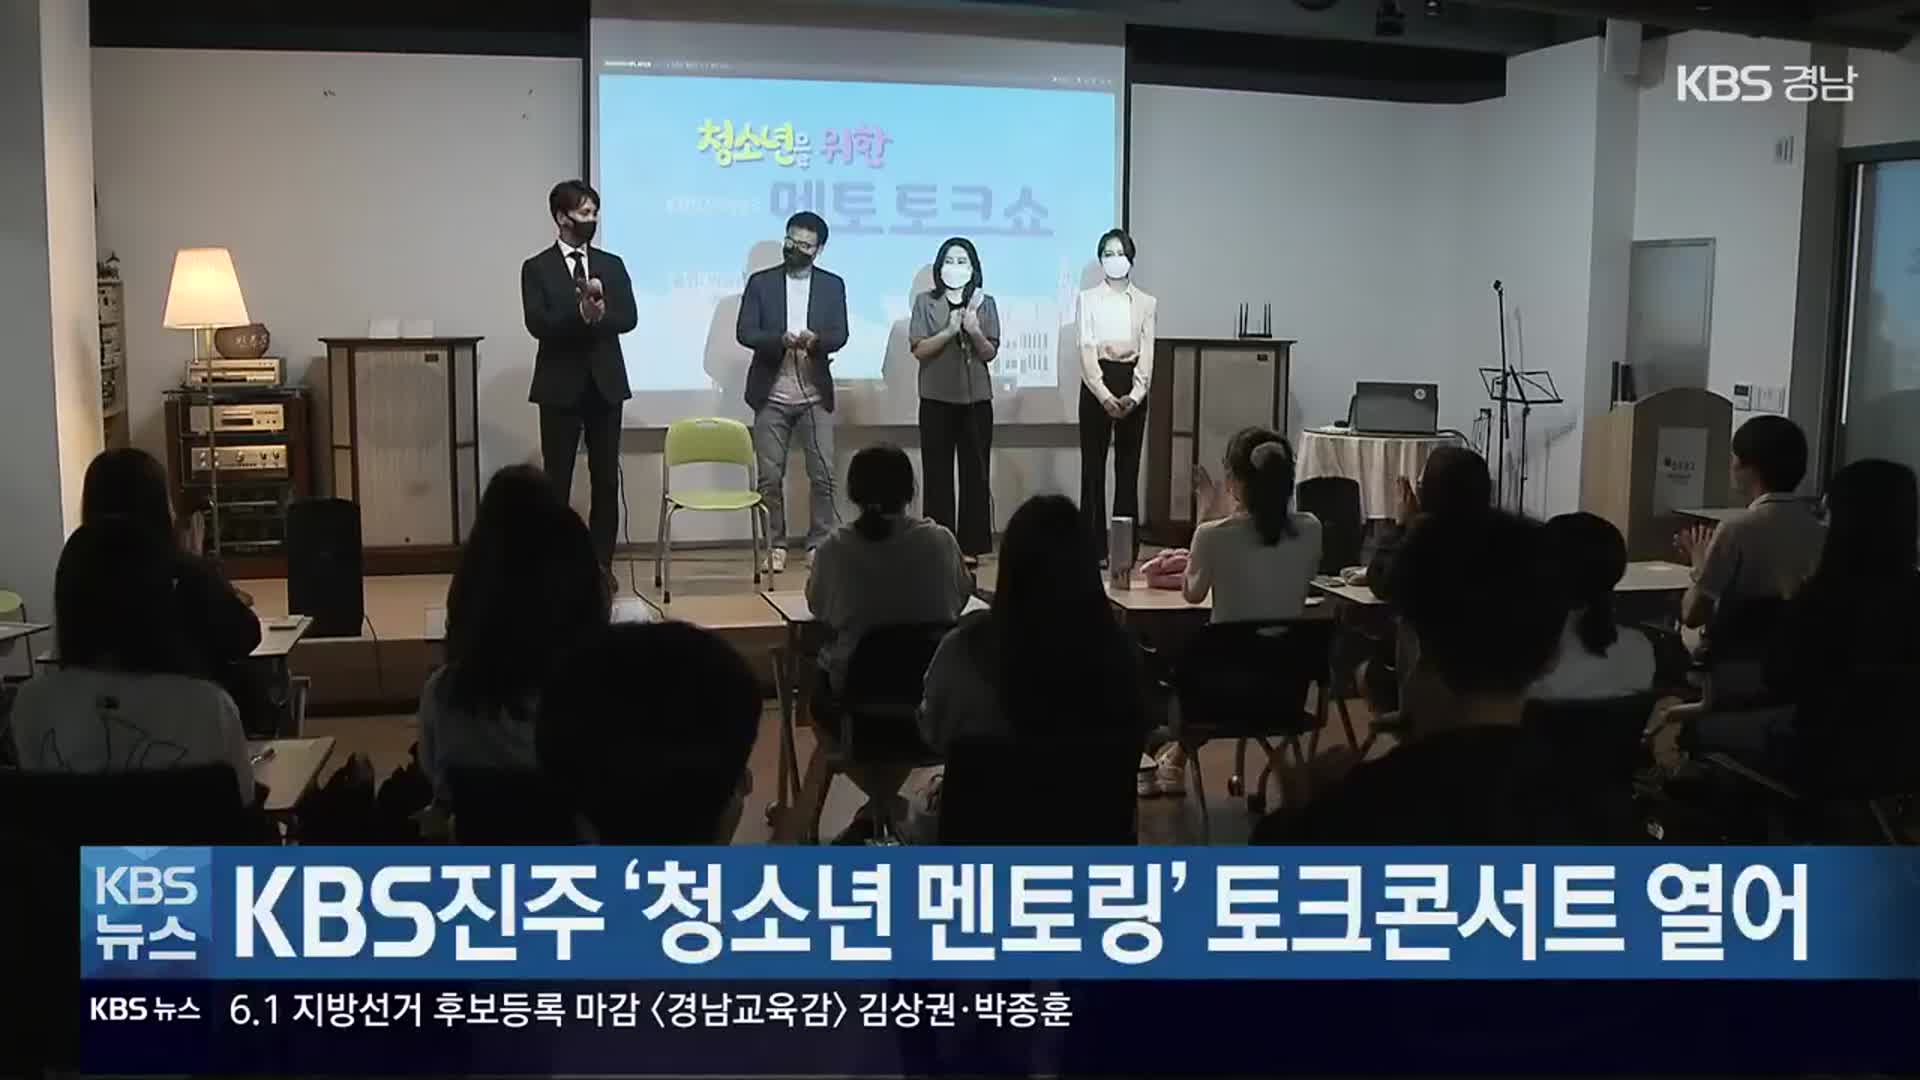 KBS진주 ‘청소년 멘토링’ 토크콘서트 열어